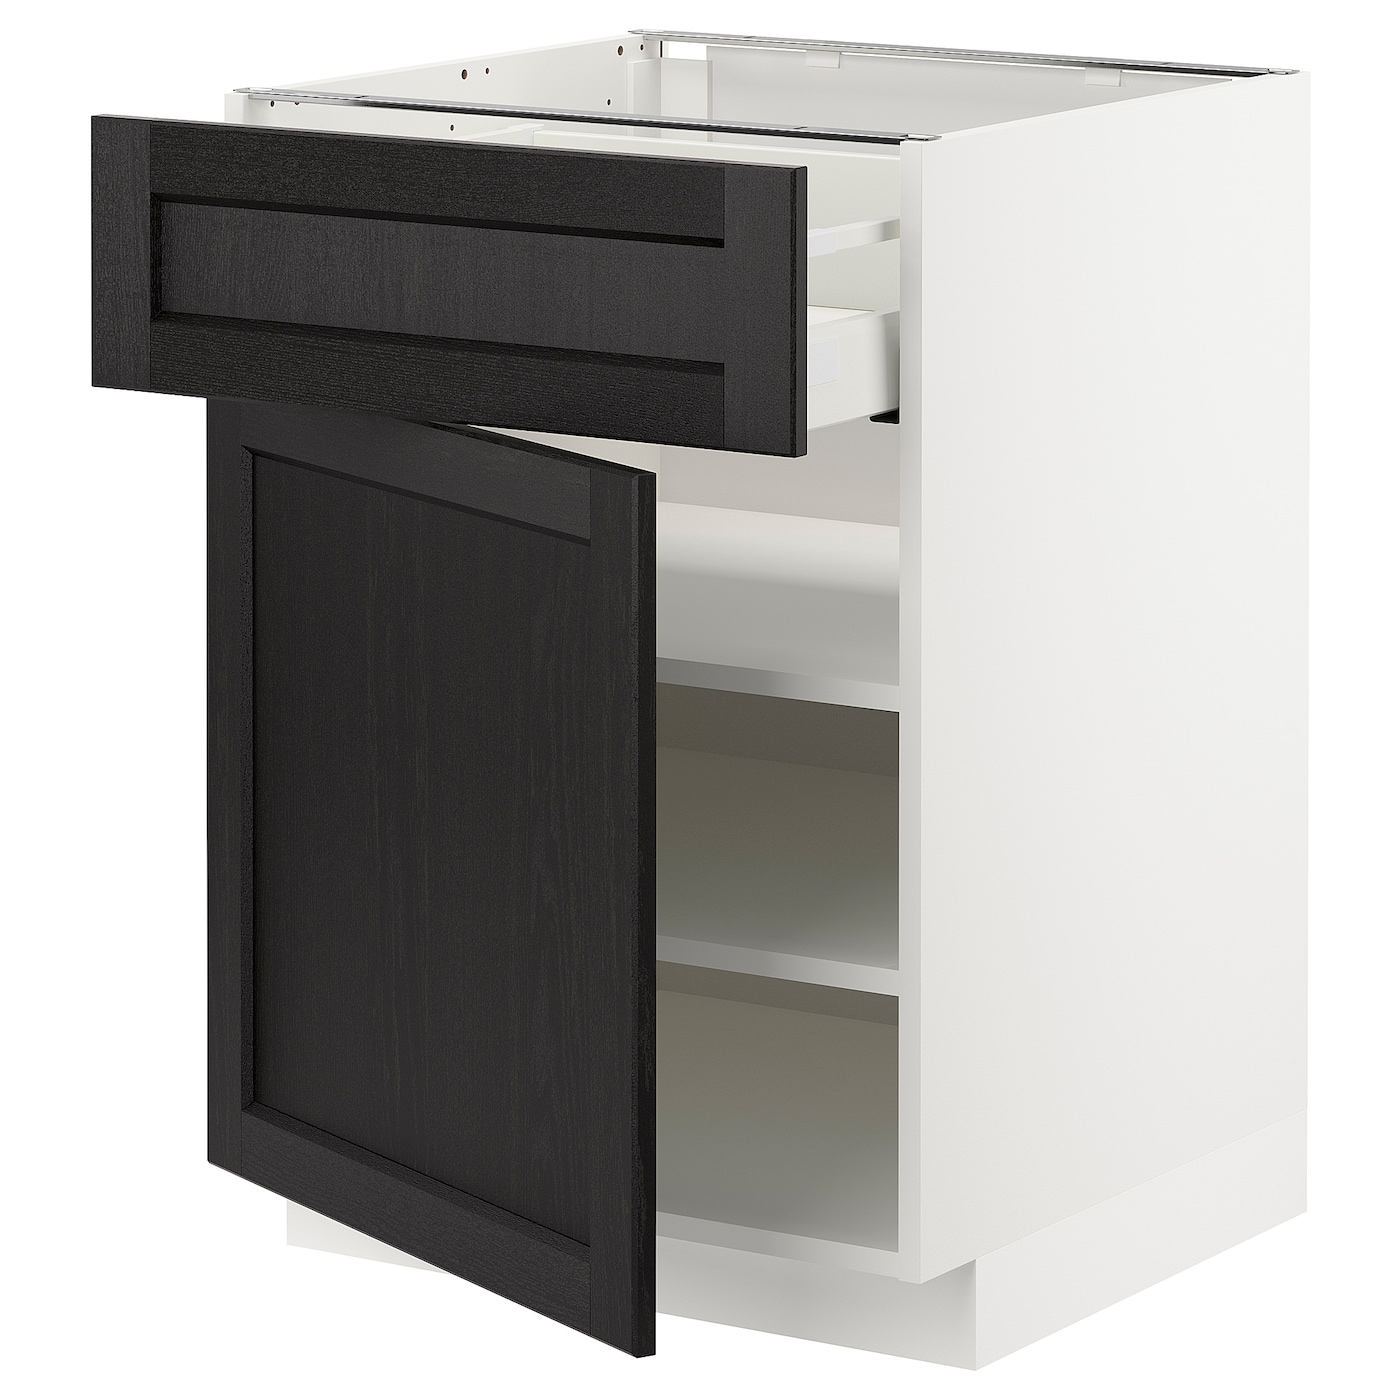 Напольный шкаф - IKEA METOD MAXIMERA, 88x62x60см, черный/белый, МЕТОД МАКСИМЕРА ИКЕА